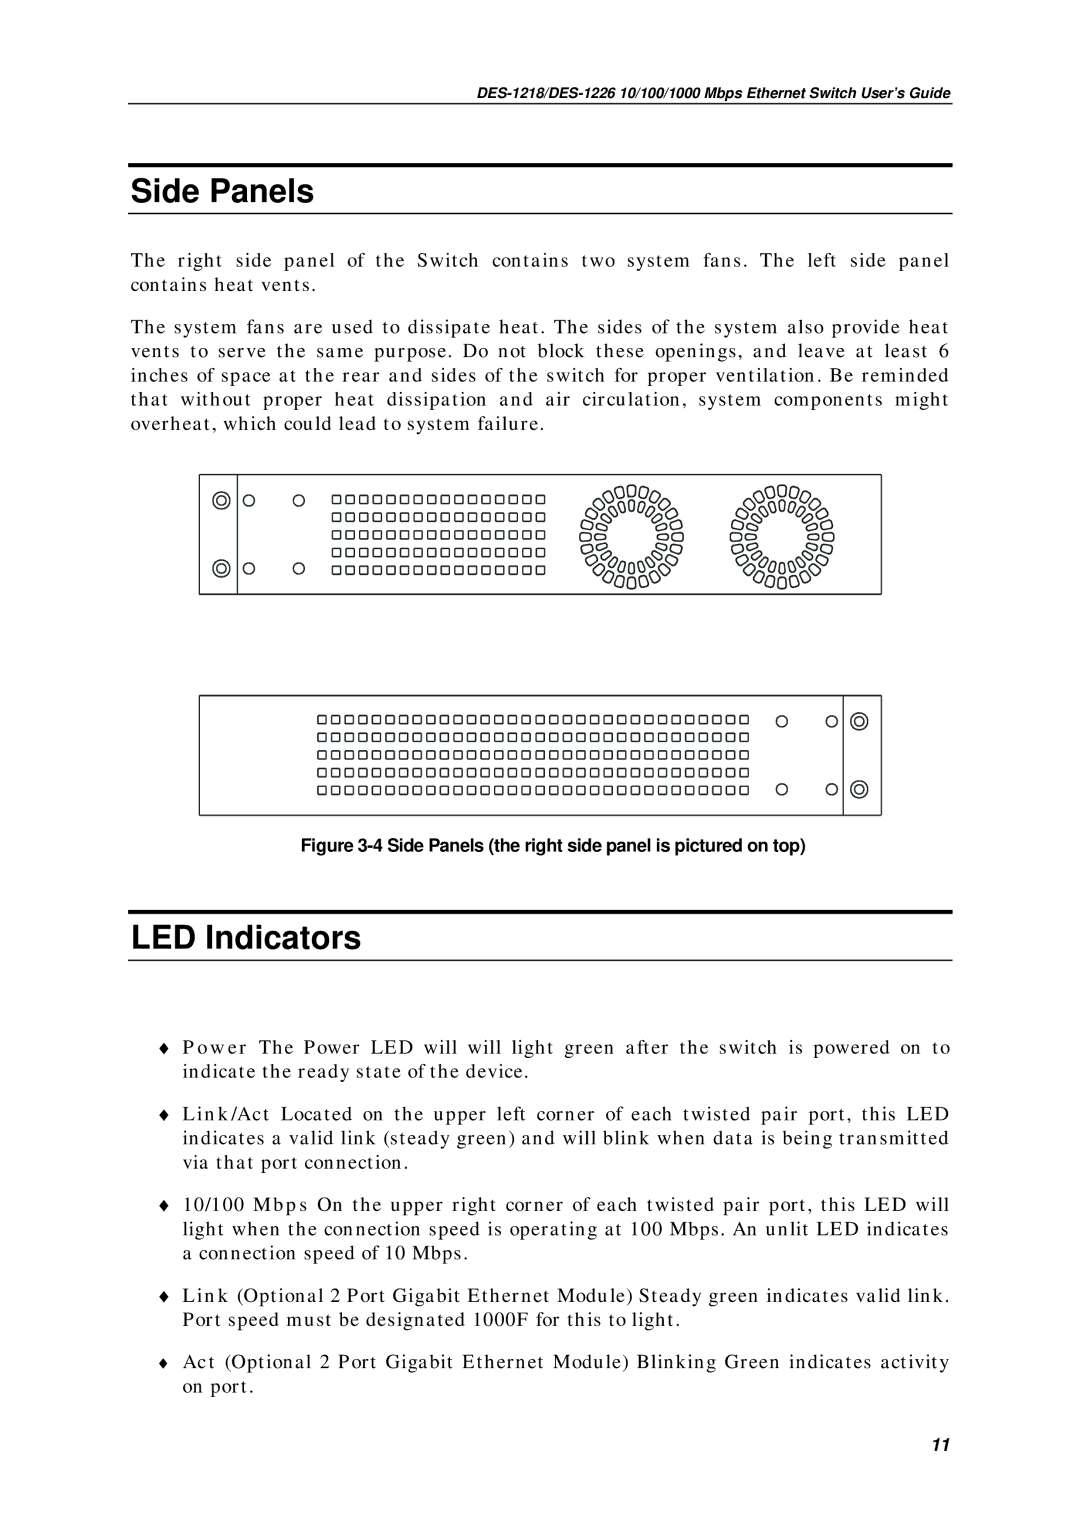 D-Link DES1226, DES-1218 manual Side Panels, LED Indicators 